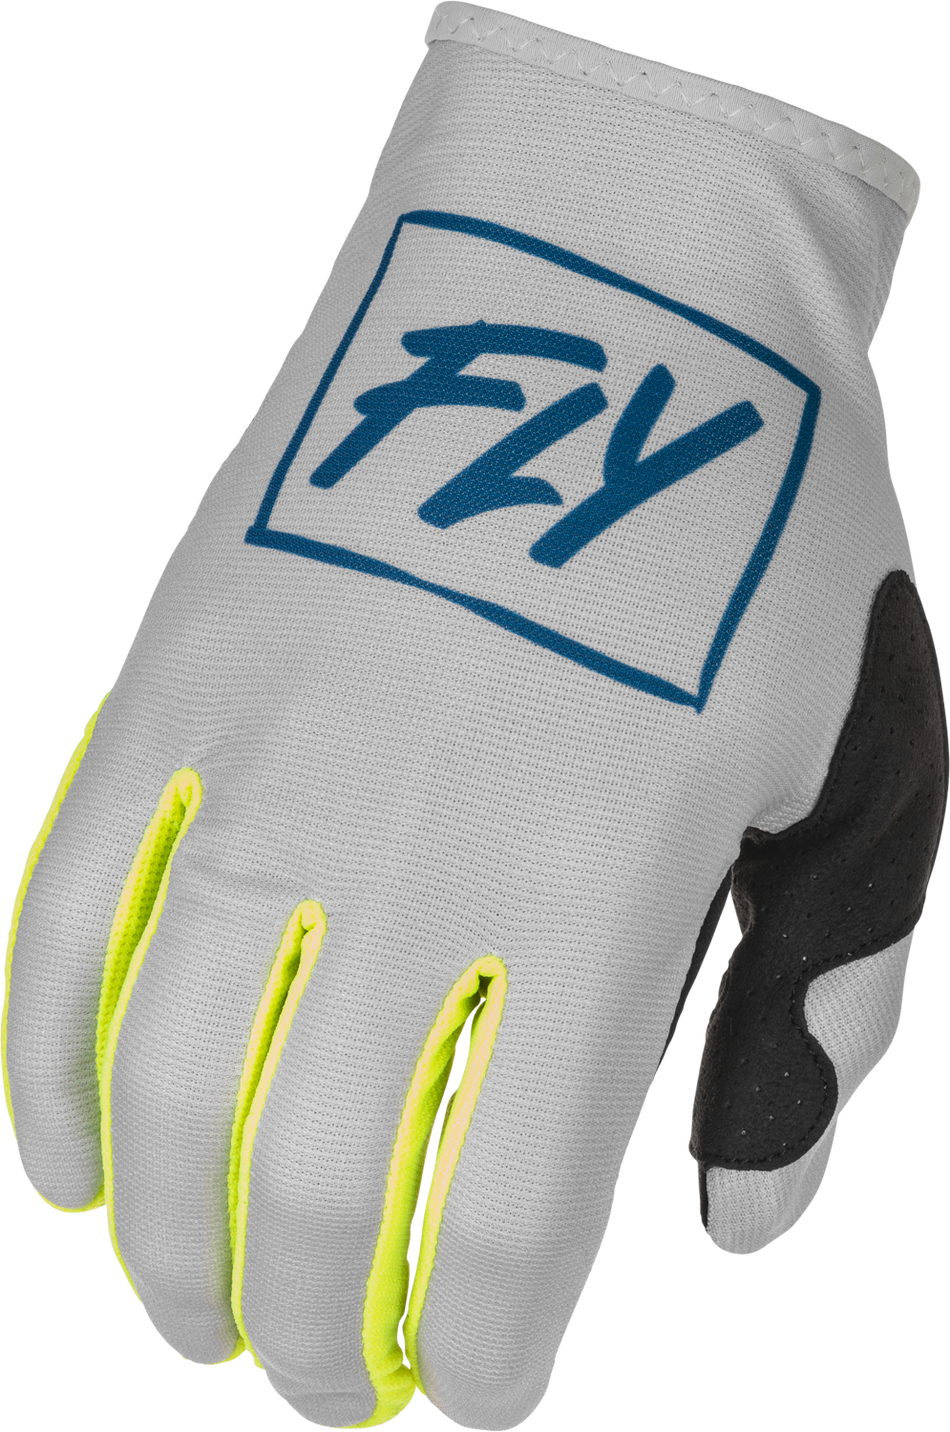 FLY RACING Lite Gloves Grey/Teal/Hi-Vis 3x 375-7113X